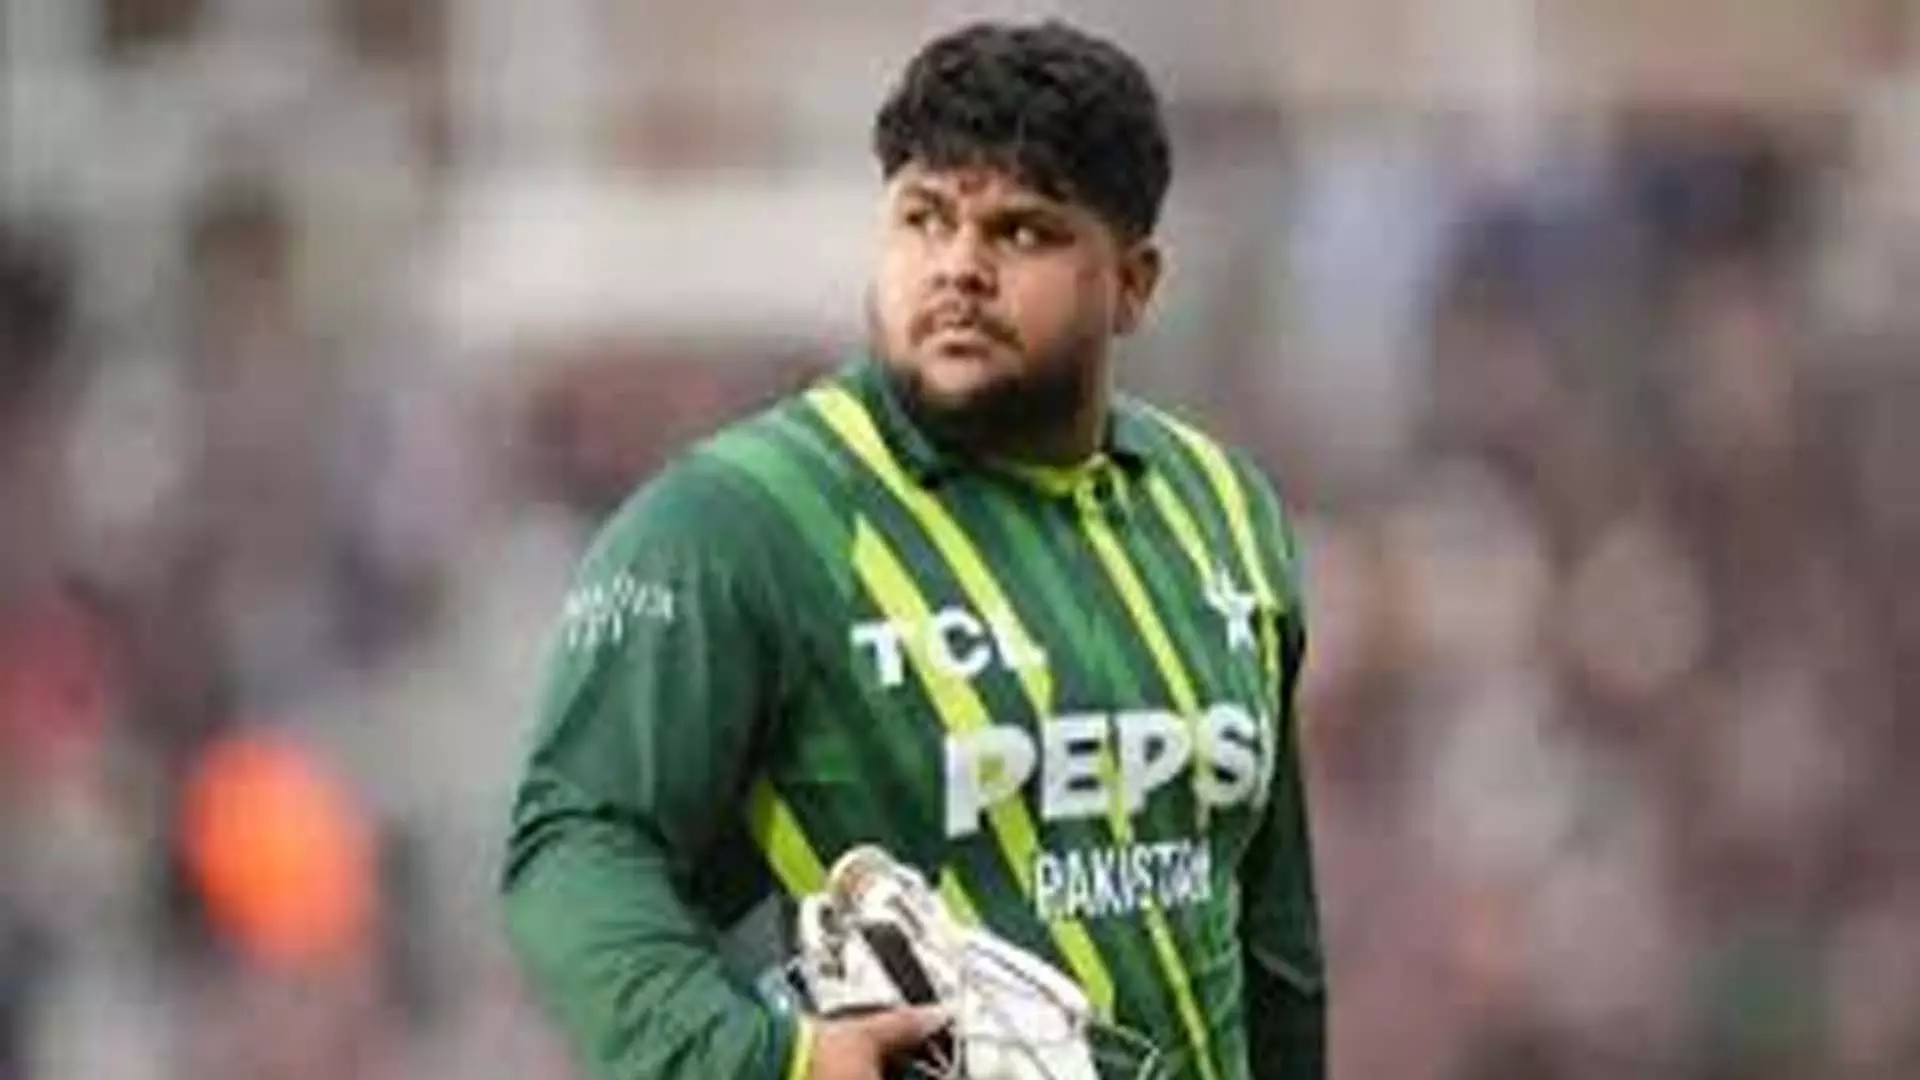 New York: न्यूयॉर्क पाकिस्तान के टी20 विश्व कप के मैच में यूएसए के खिलाफ आजम खान के खराब प्रदर्शन पर खुलकर बात की